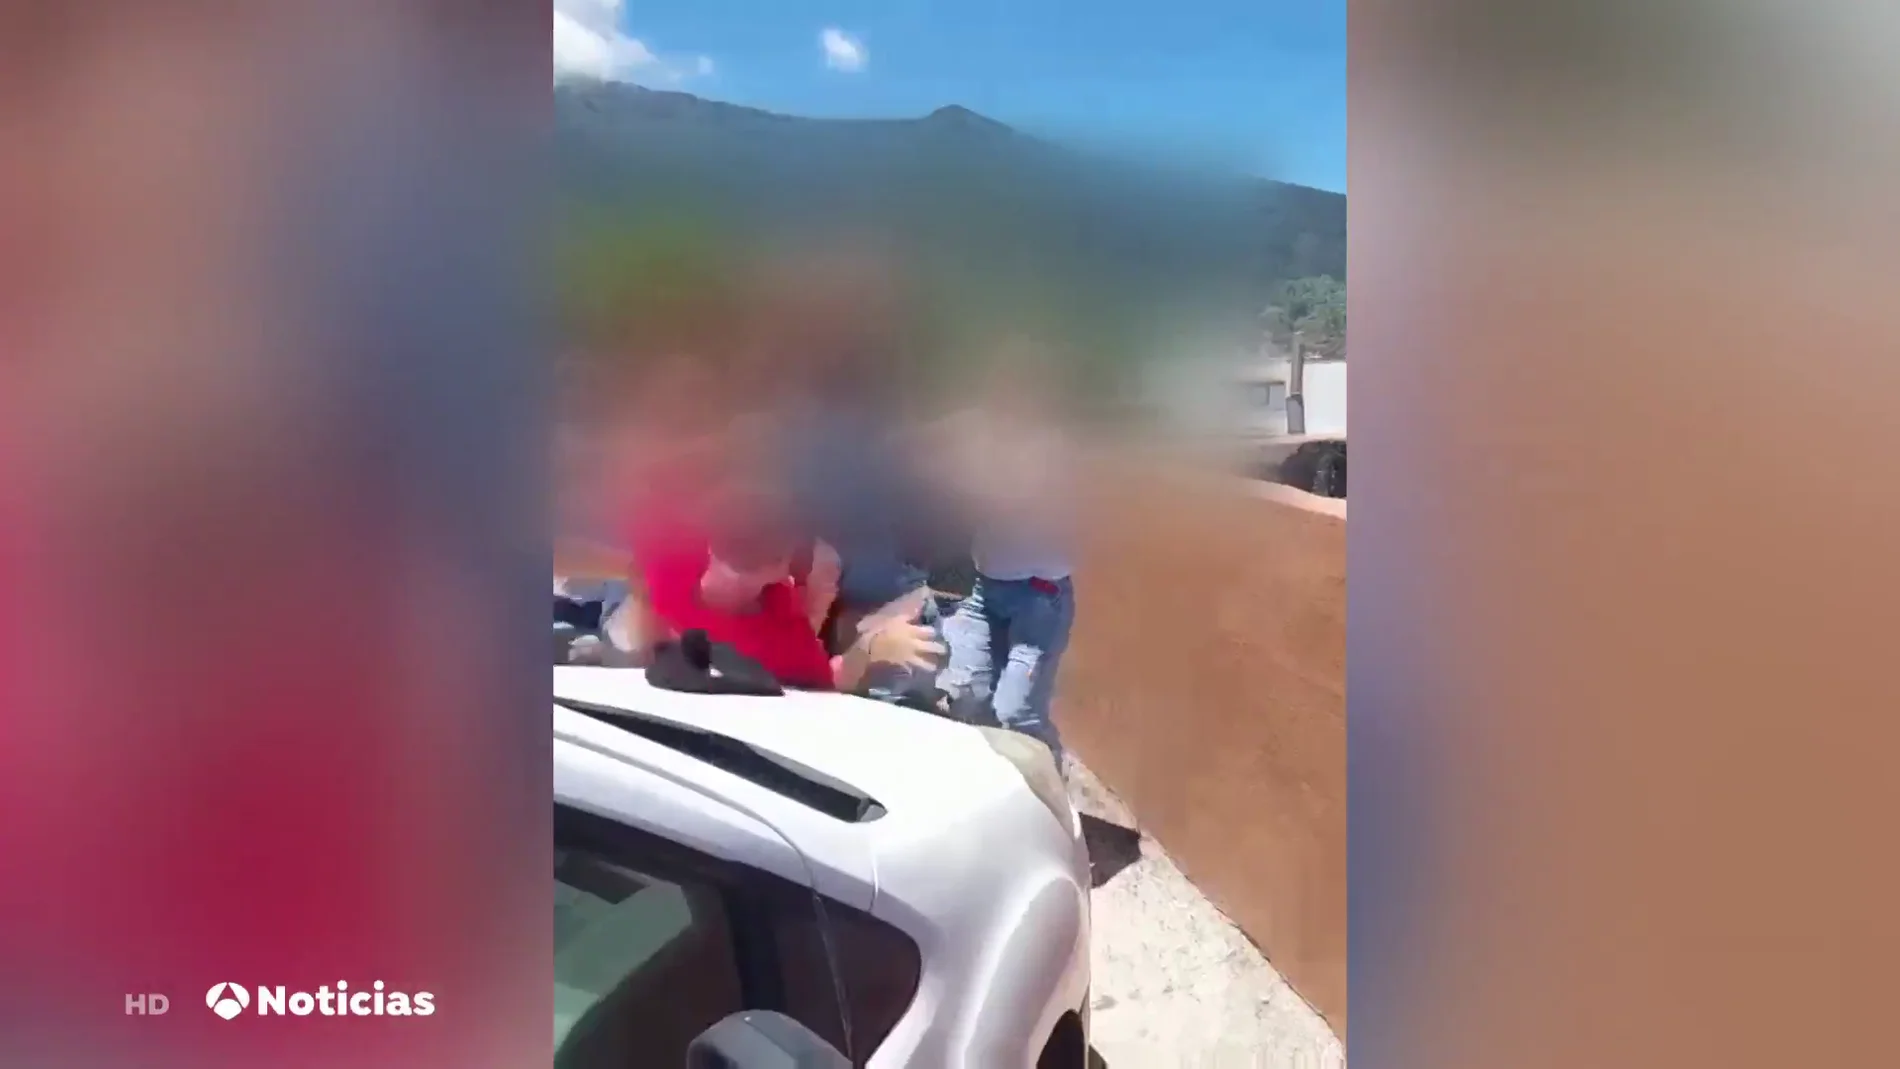 El vídeo de una pelea multitudinaria con puñetazos, patadas y empujones en un bar en Tenerife